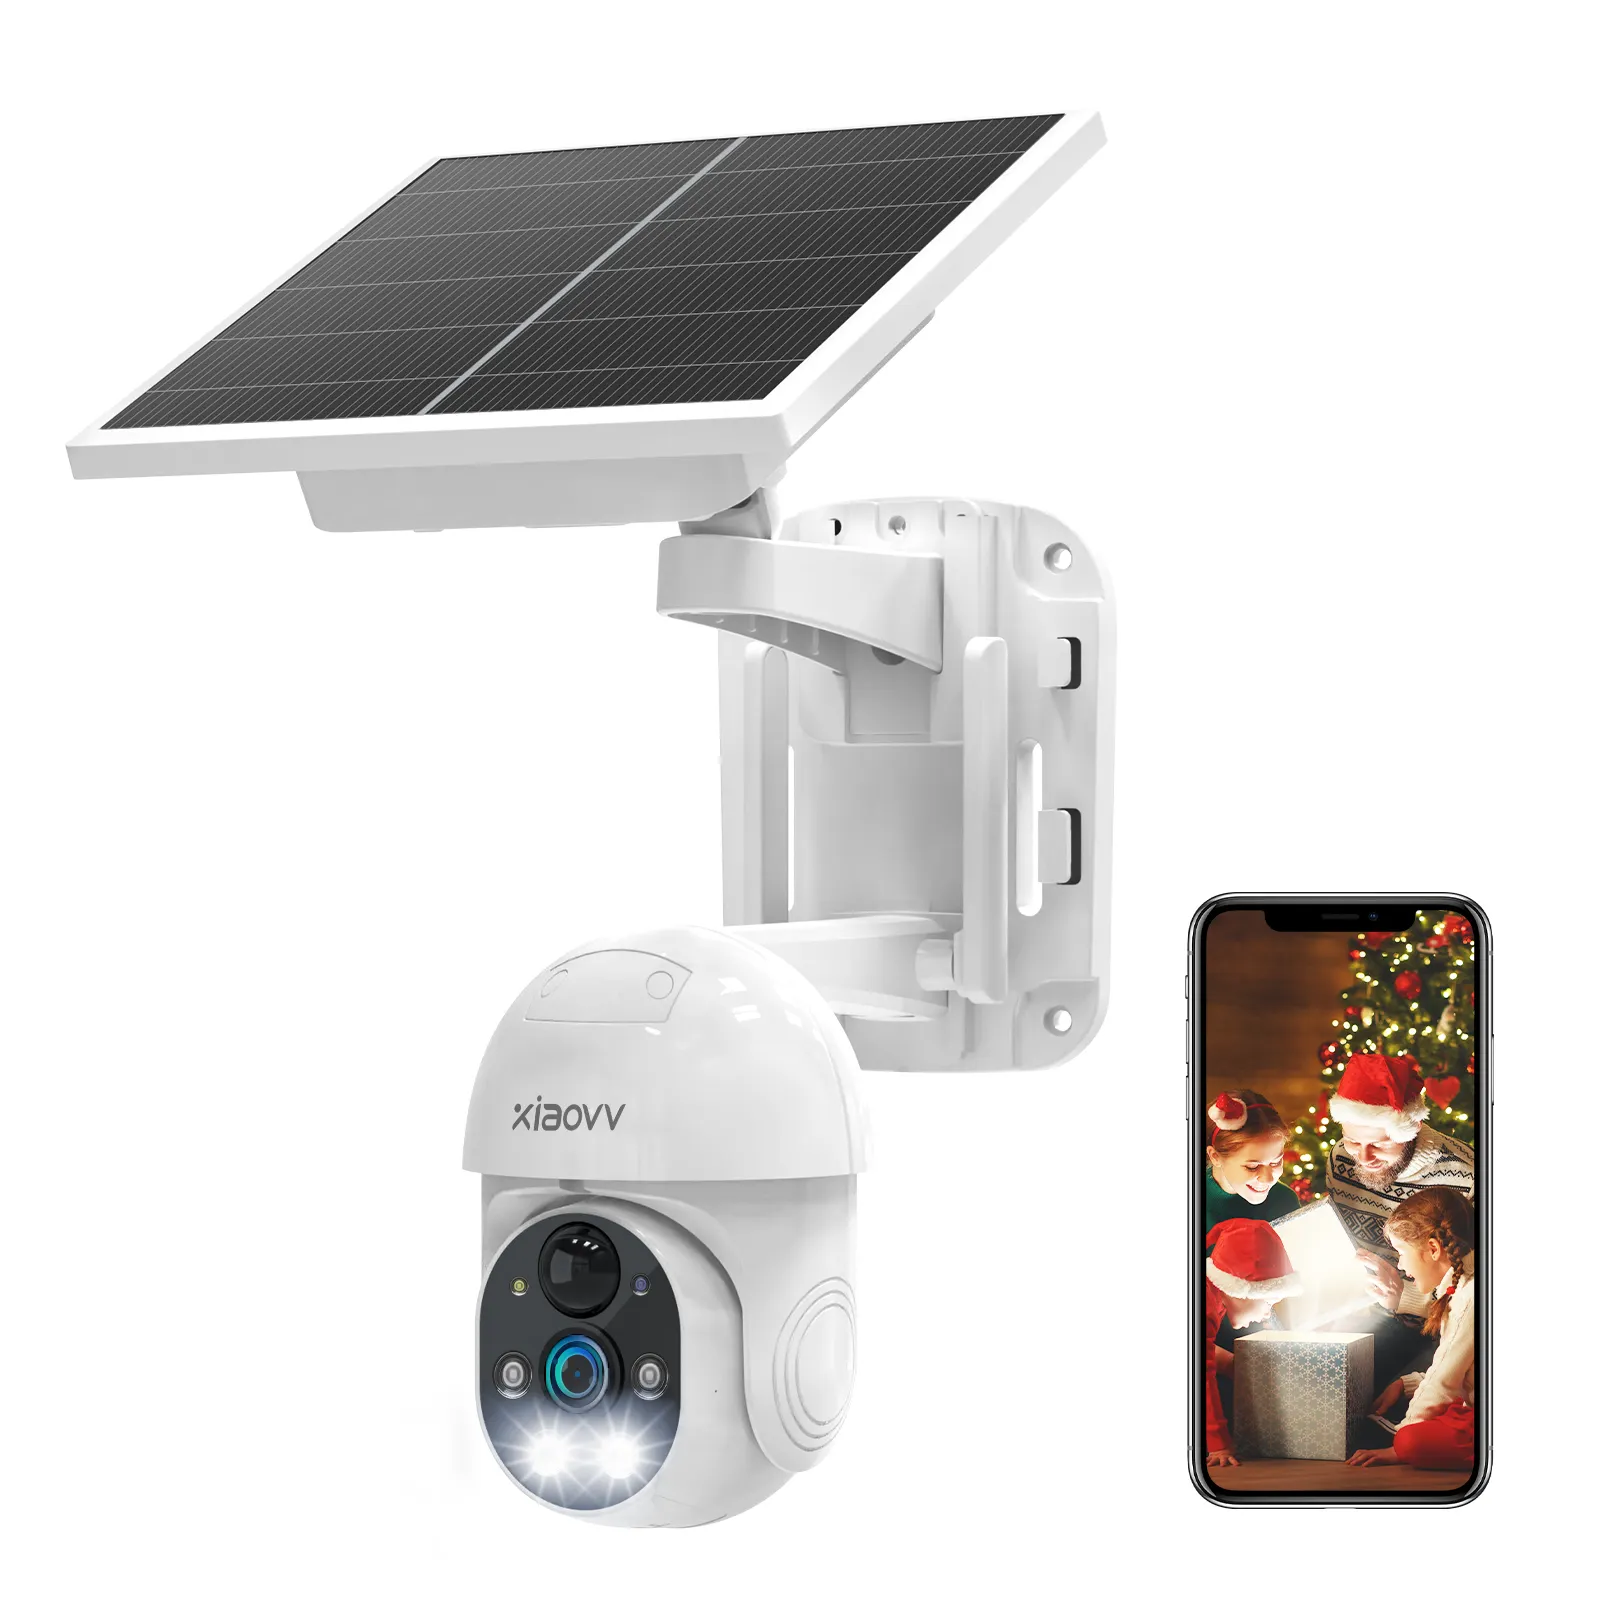 Outdoor 4g solar betriebene Tag und Nacht Kamera solar betriebene Infered Kameras drahtlose Überwachungs kamera Outdoor WiFi Solar